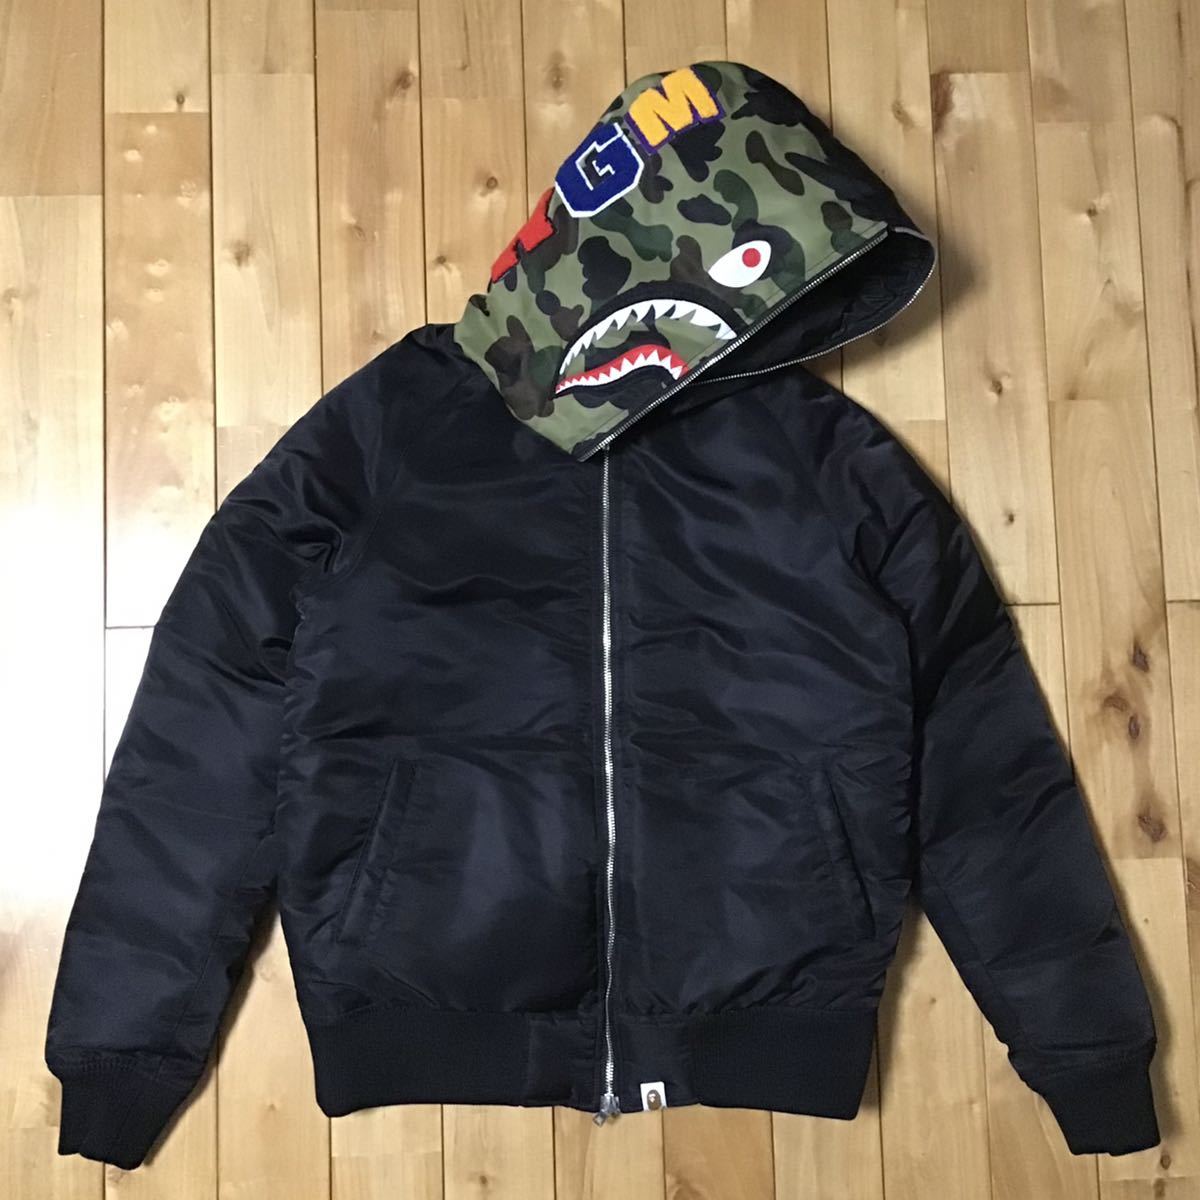 シャーク パーカー ダウンジャケット Sサイズ shark full zip hoodie down jacket a bathing ape BAPE camo エイプ ベイプ 迷彩 i9178